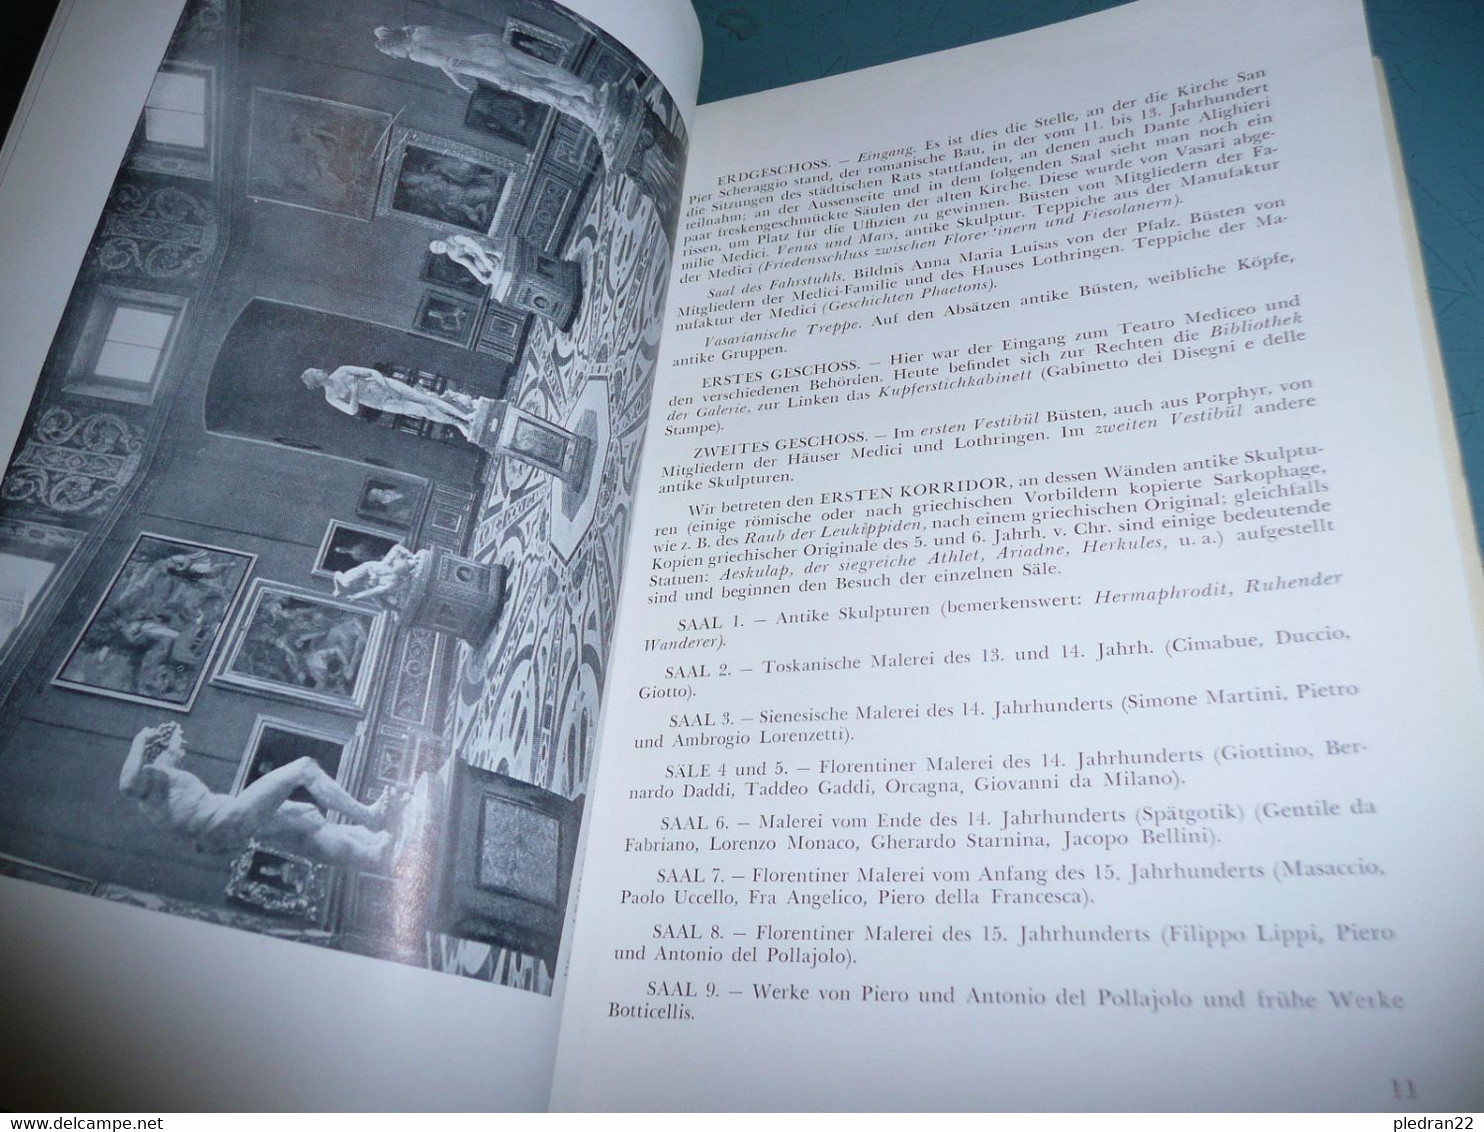 CESARE FASOLA DIE GALERIE DER UFFIZIEN IN FLORENZ GAKERIE DES OFFICES A FLORENCE ALBUM FÜHRER 1955 VERSION EN ALLEMAND - Pittura & Scultura